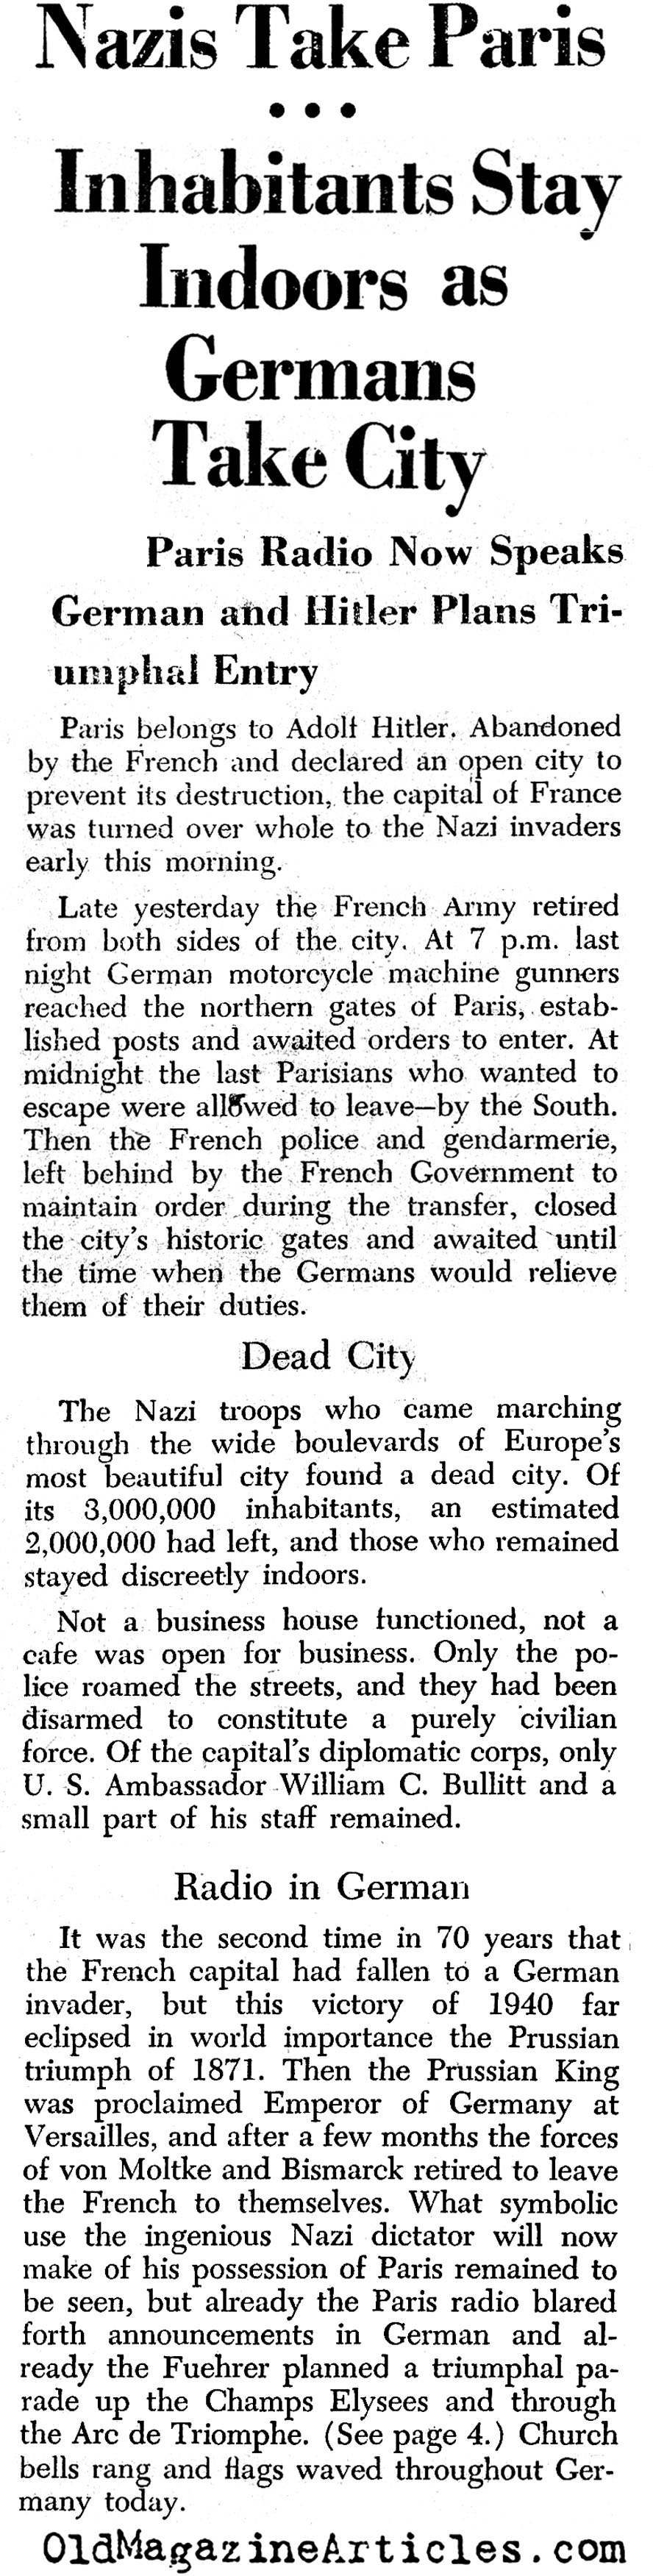 Nazis Take Paris (PM Tabloid, 1940)